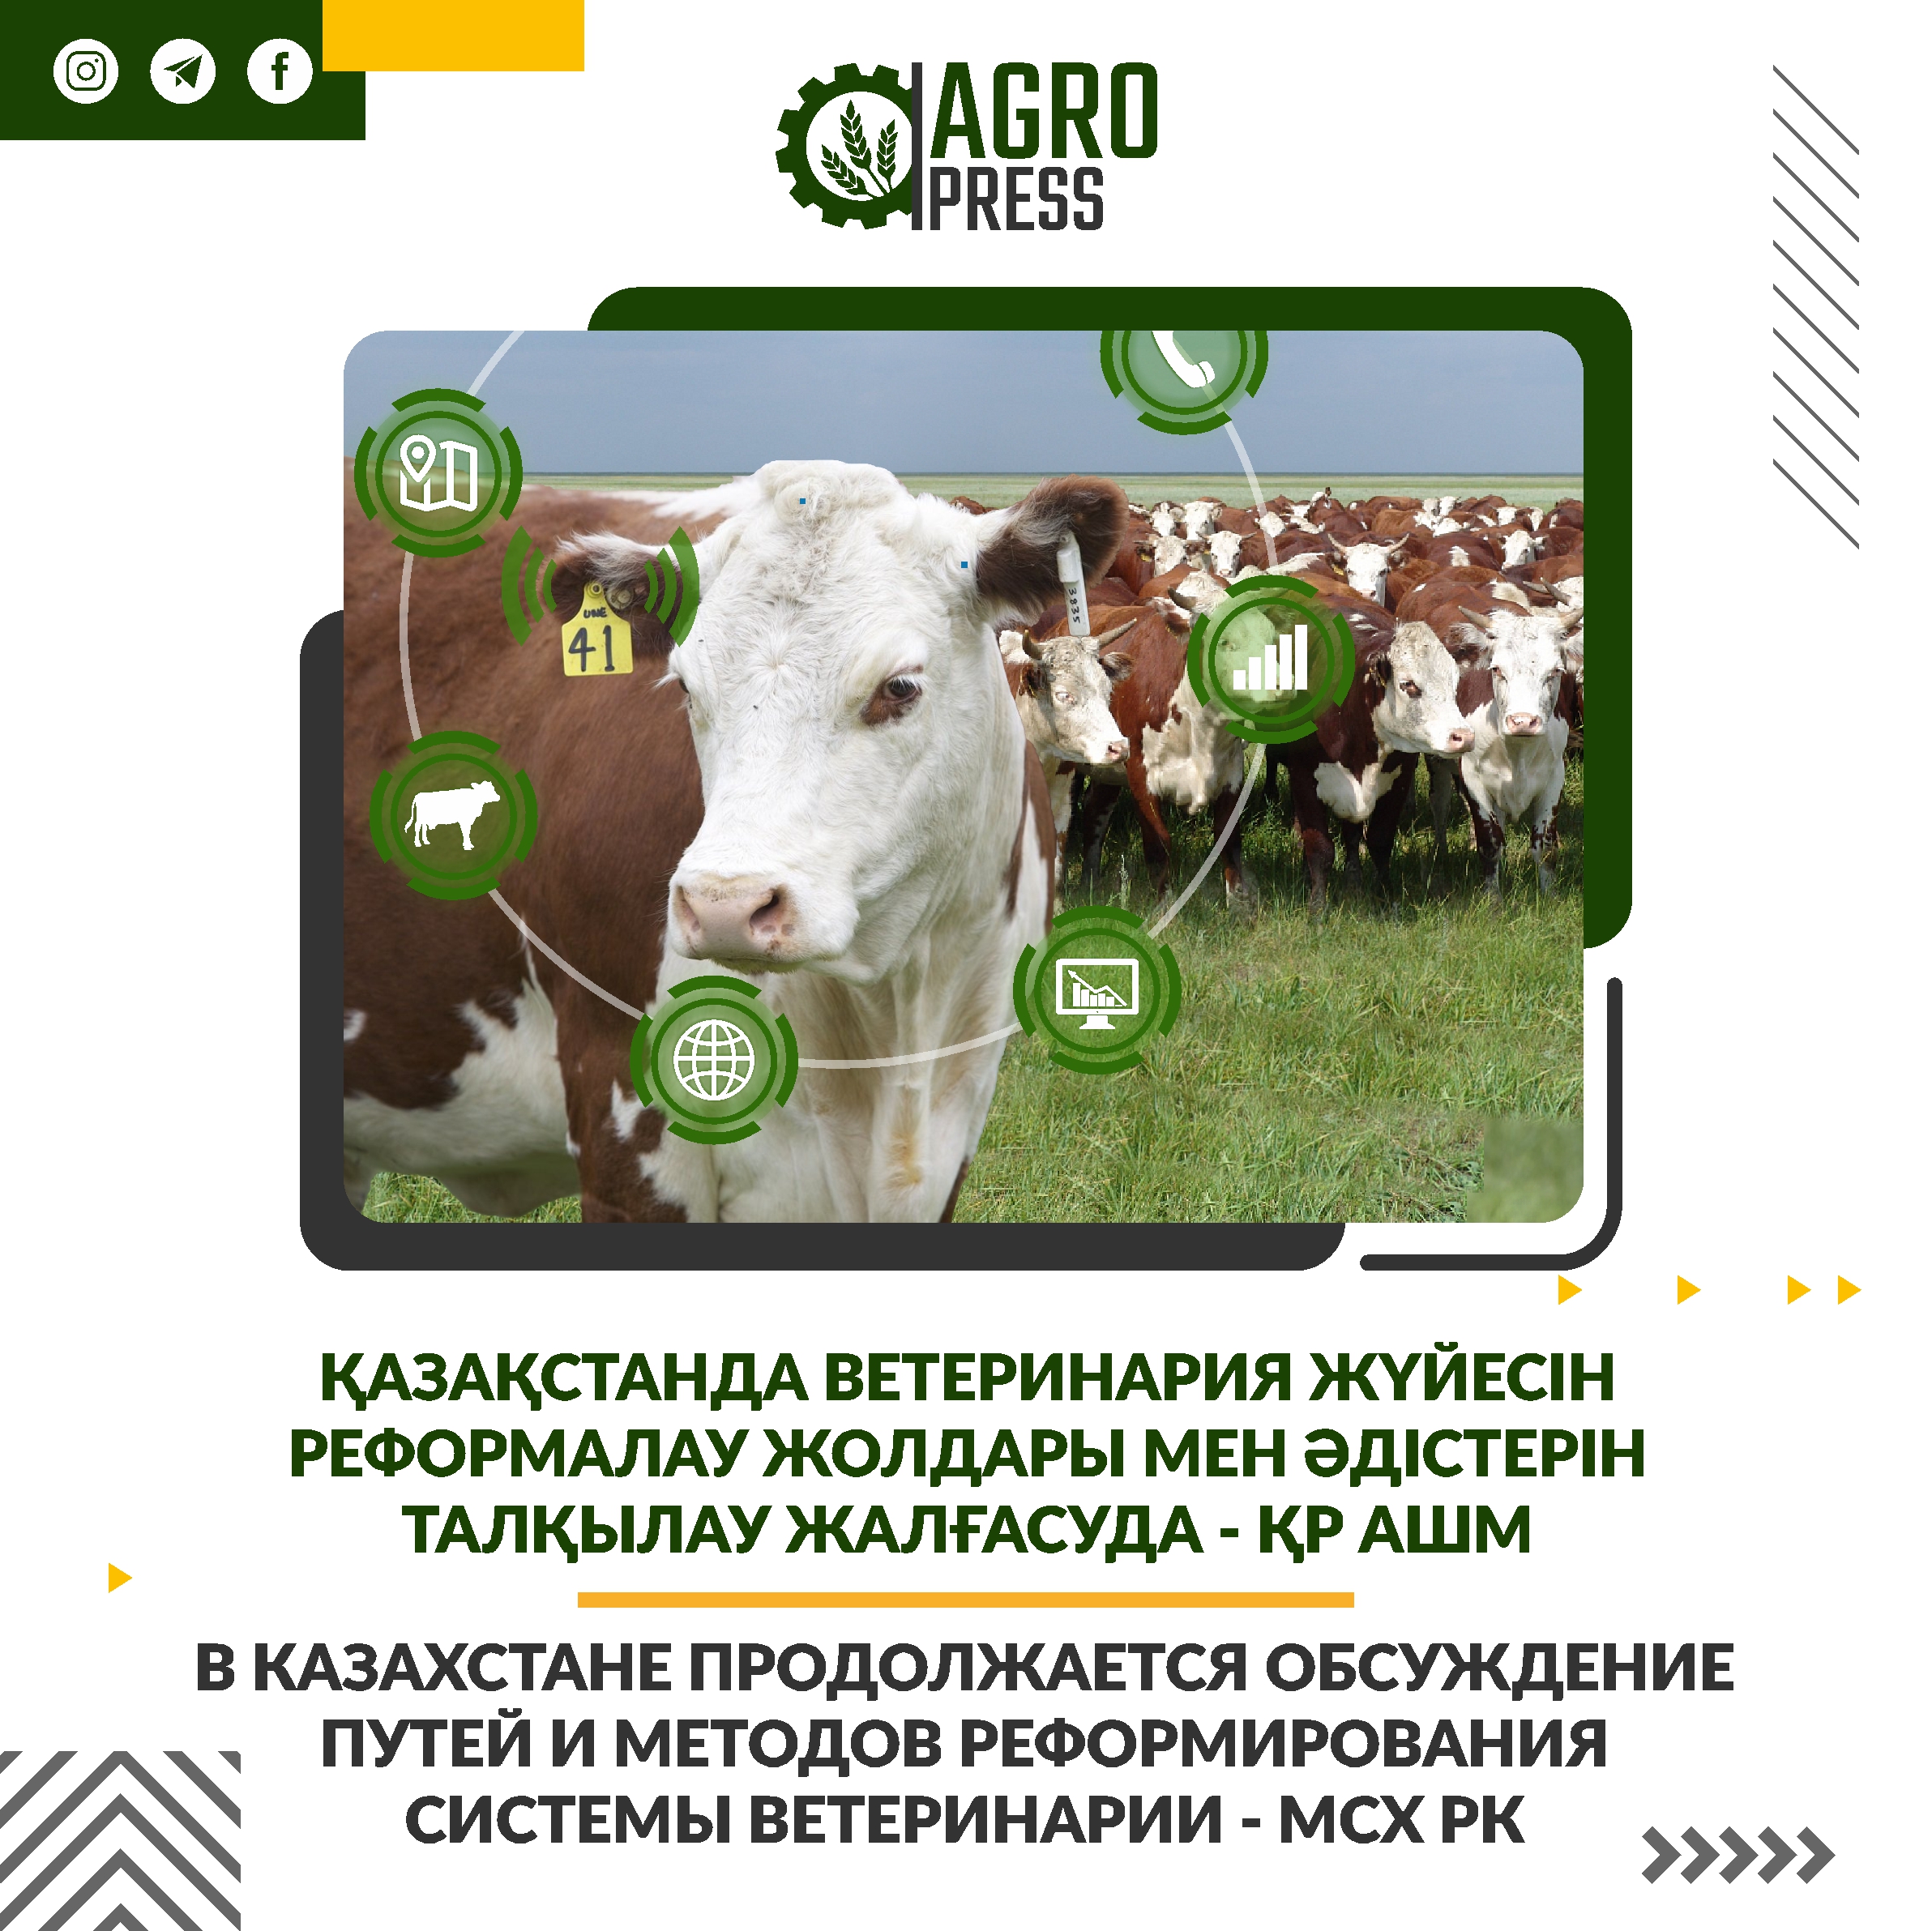 В Казахстане продолжается обсуждение путей и методов реформирования системы ветеринарии - МСХ РК